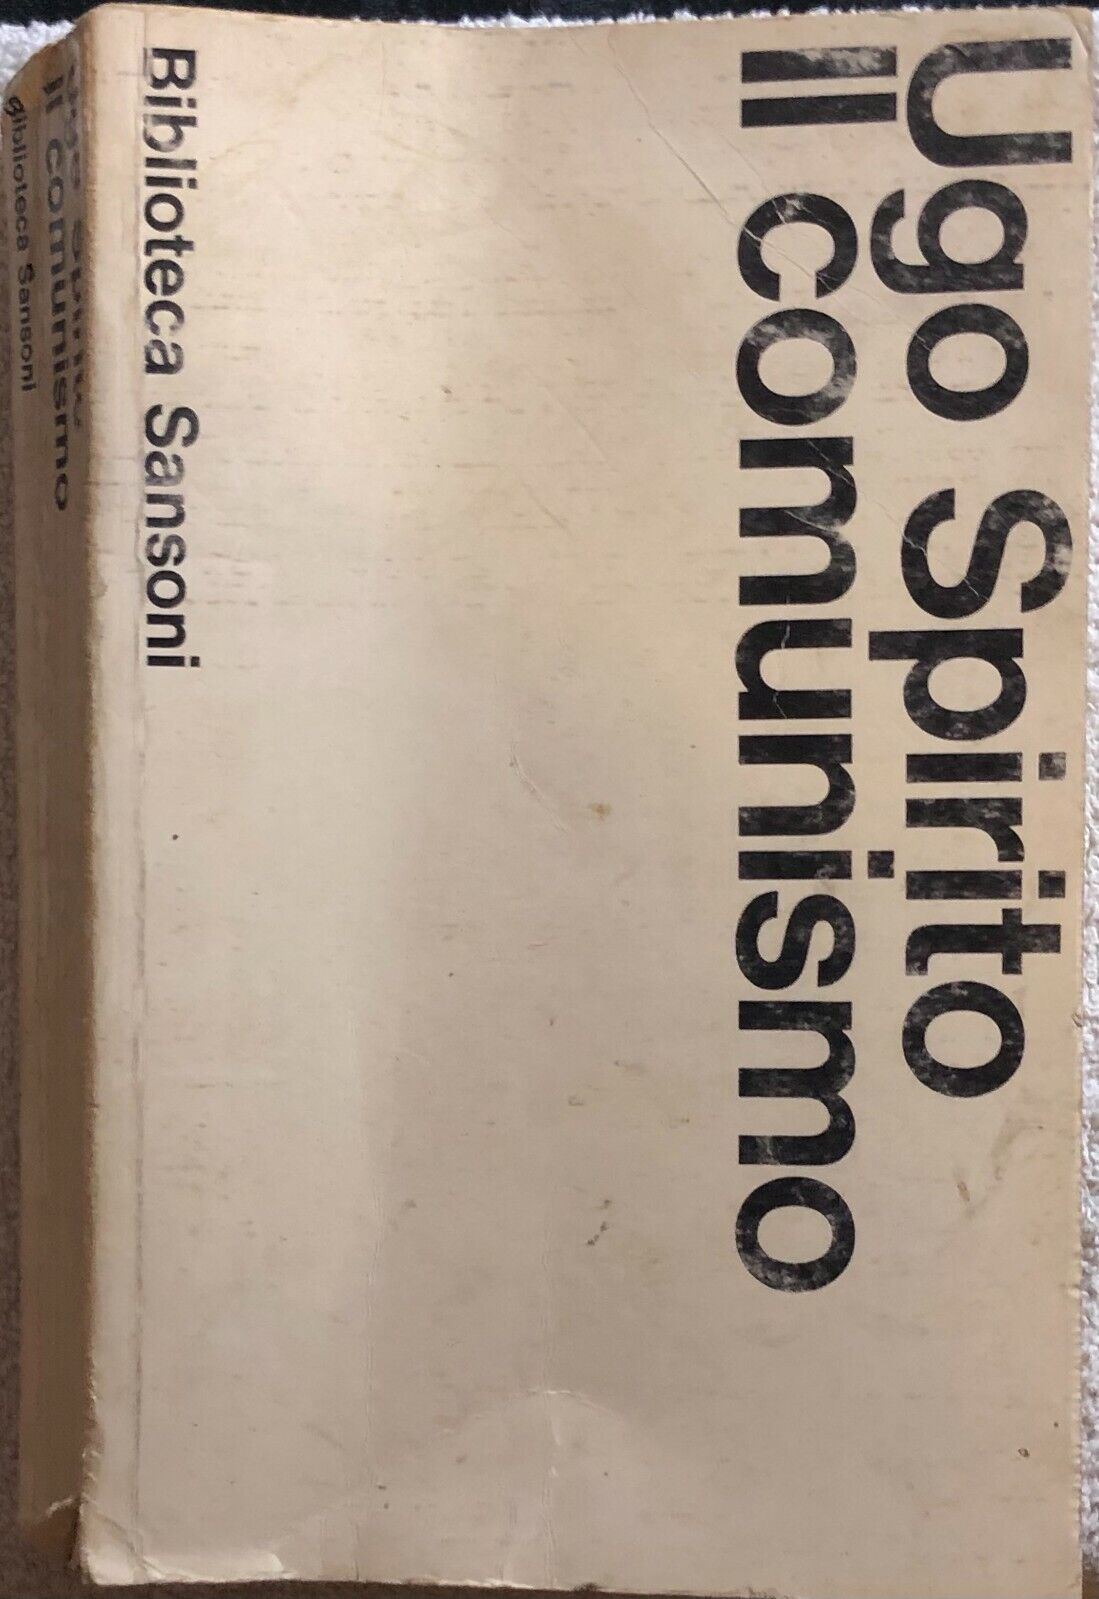 Il comunismo di Ugo Spirito,  1965,  Sansoni